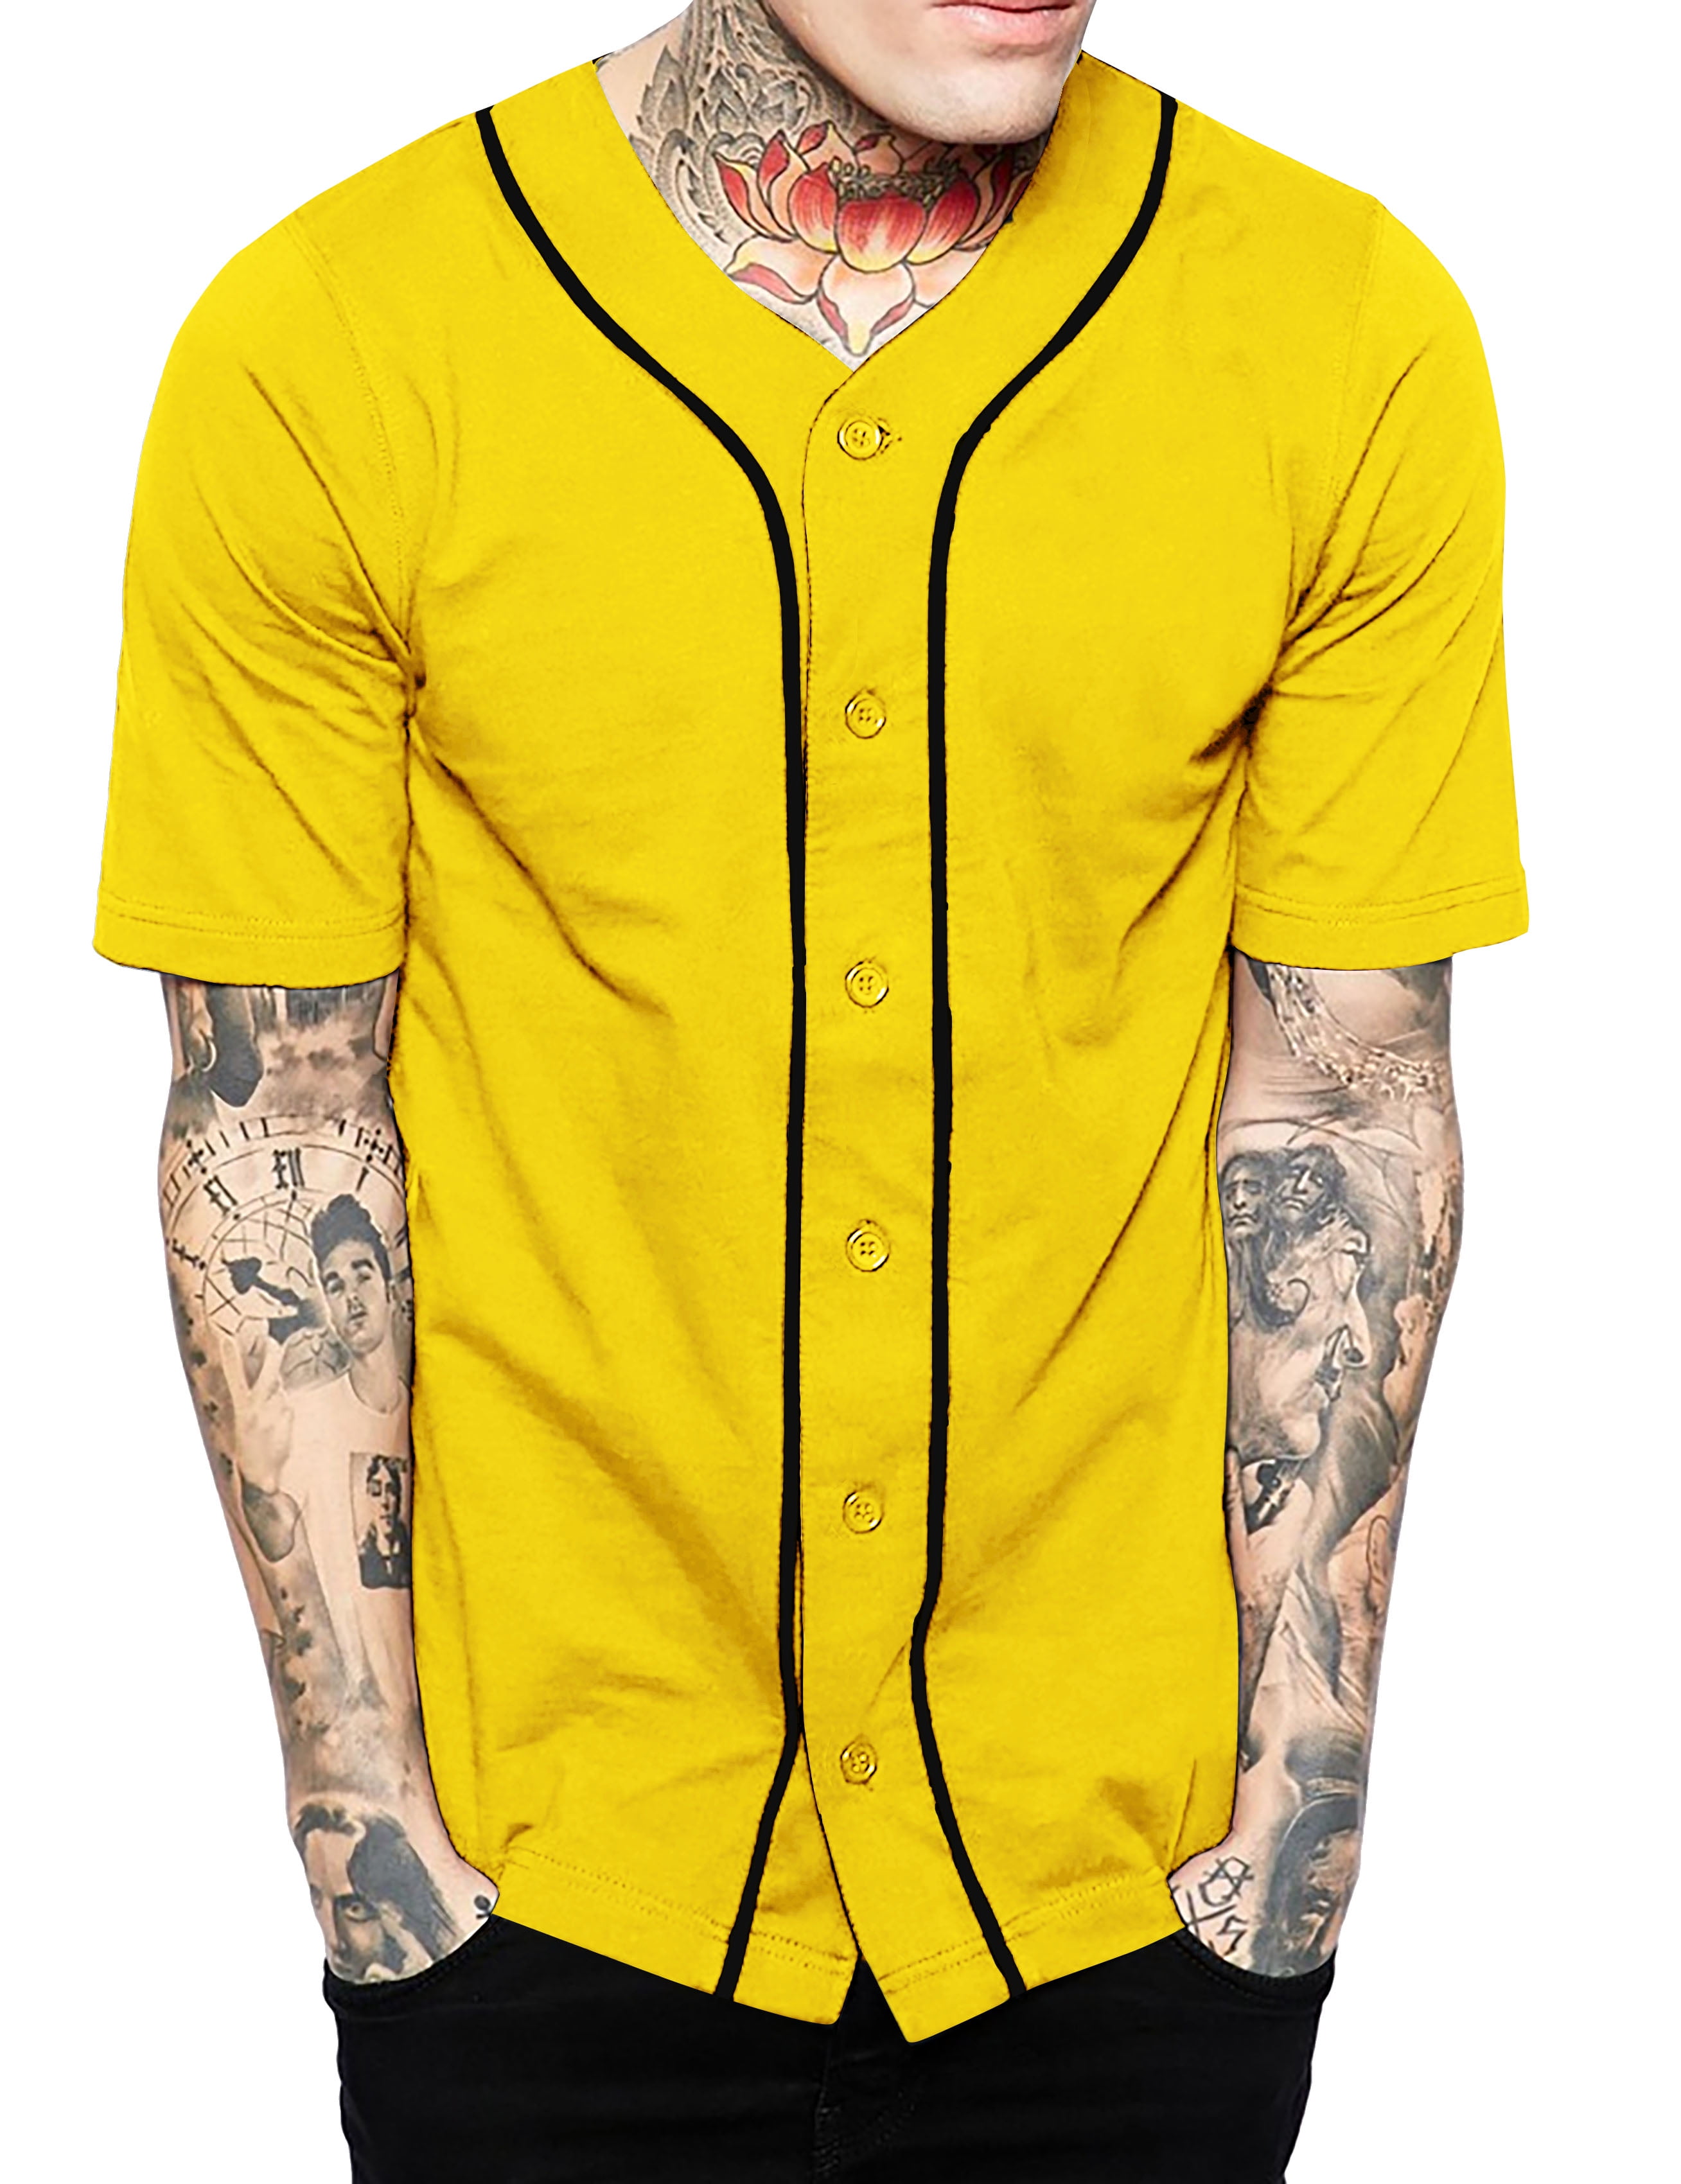 baseball jersey button down shirt